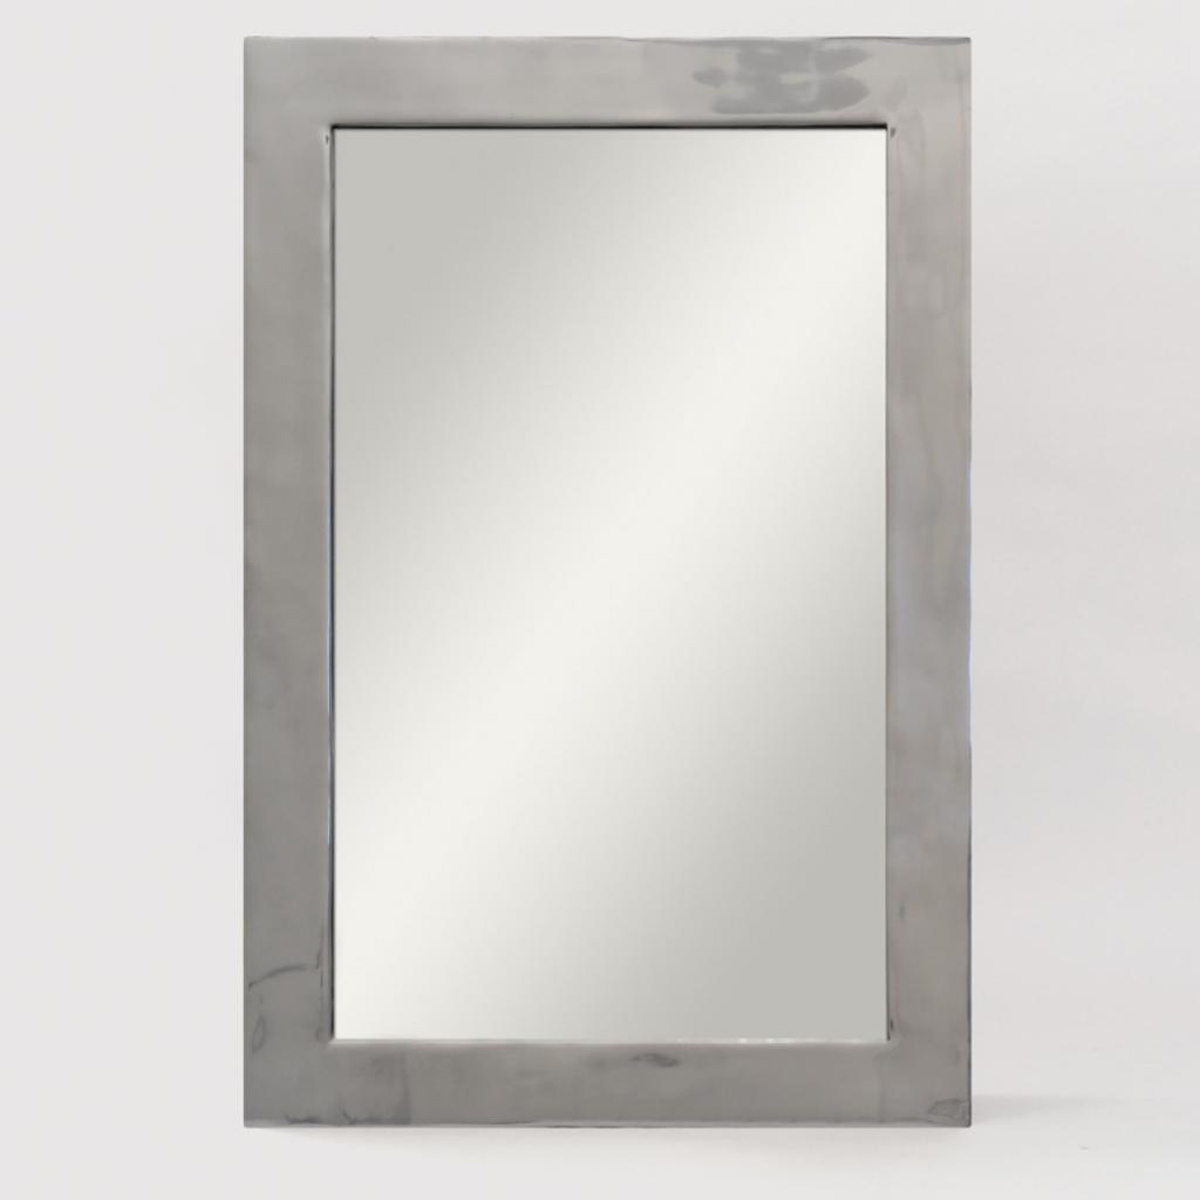 Ren-Wil Bauer Mirror - Polished Nickel